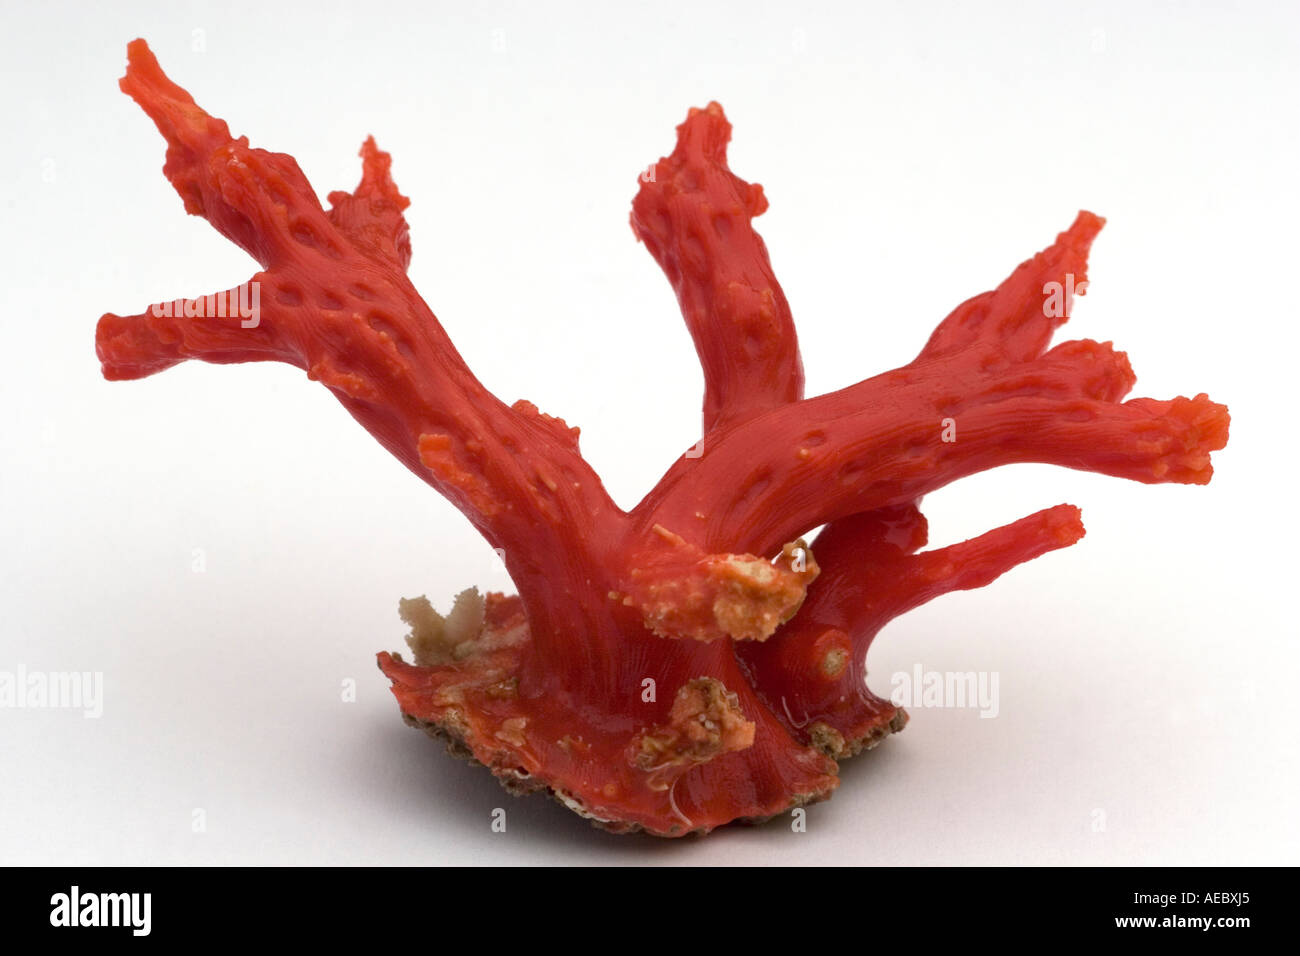 Mediterrane rote Koralle (Corallium rubrum) auf weißem Hintergrund. Corail rouge de Méditerranée (Corallium rubrum). Stockfoto